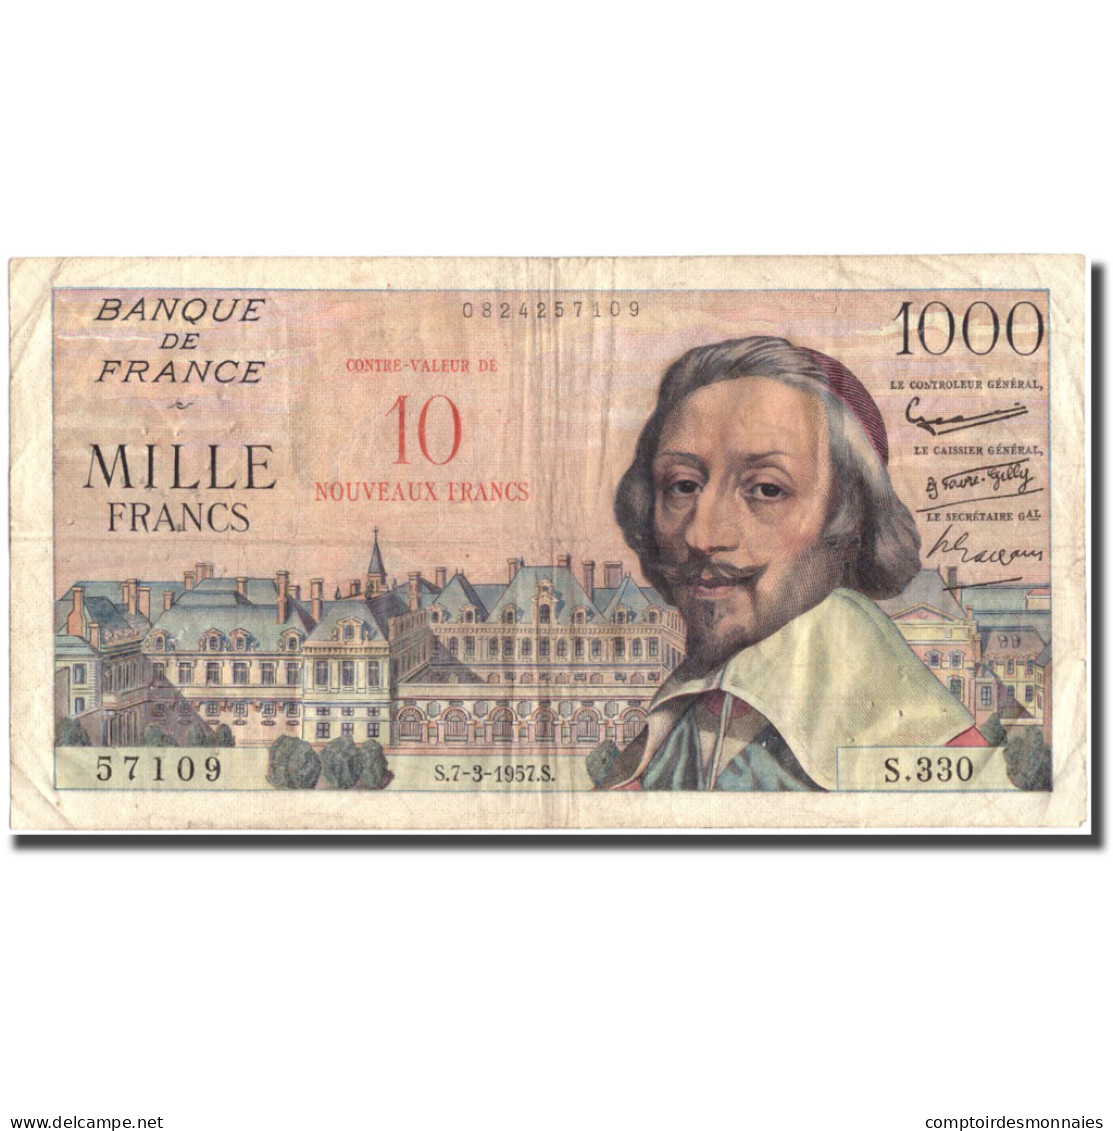 France, 10 Nouveaux Francs On 1000 Francs, 50 NF 1959-1961 ''Henri IV'', 1957 - 50 NF 1959-1961 ''Henri IV''